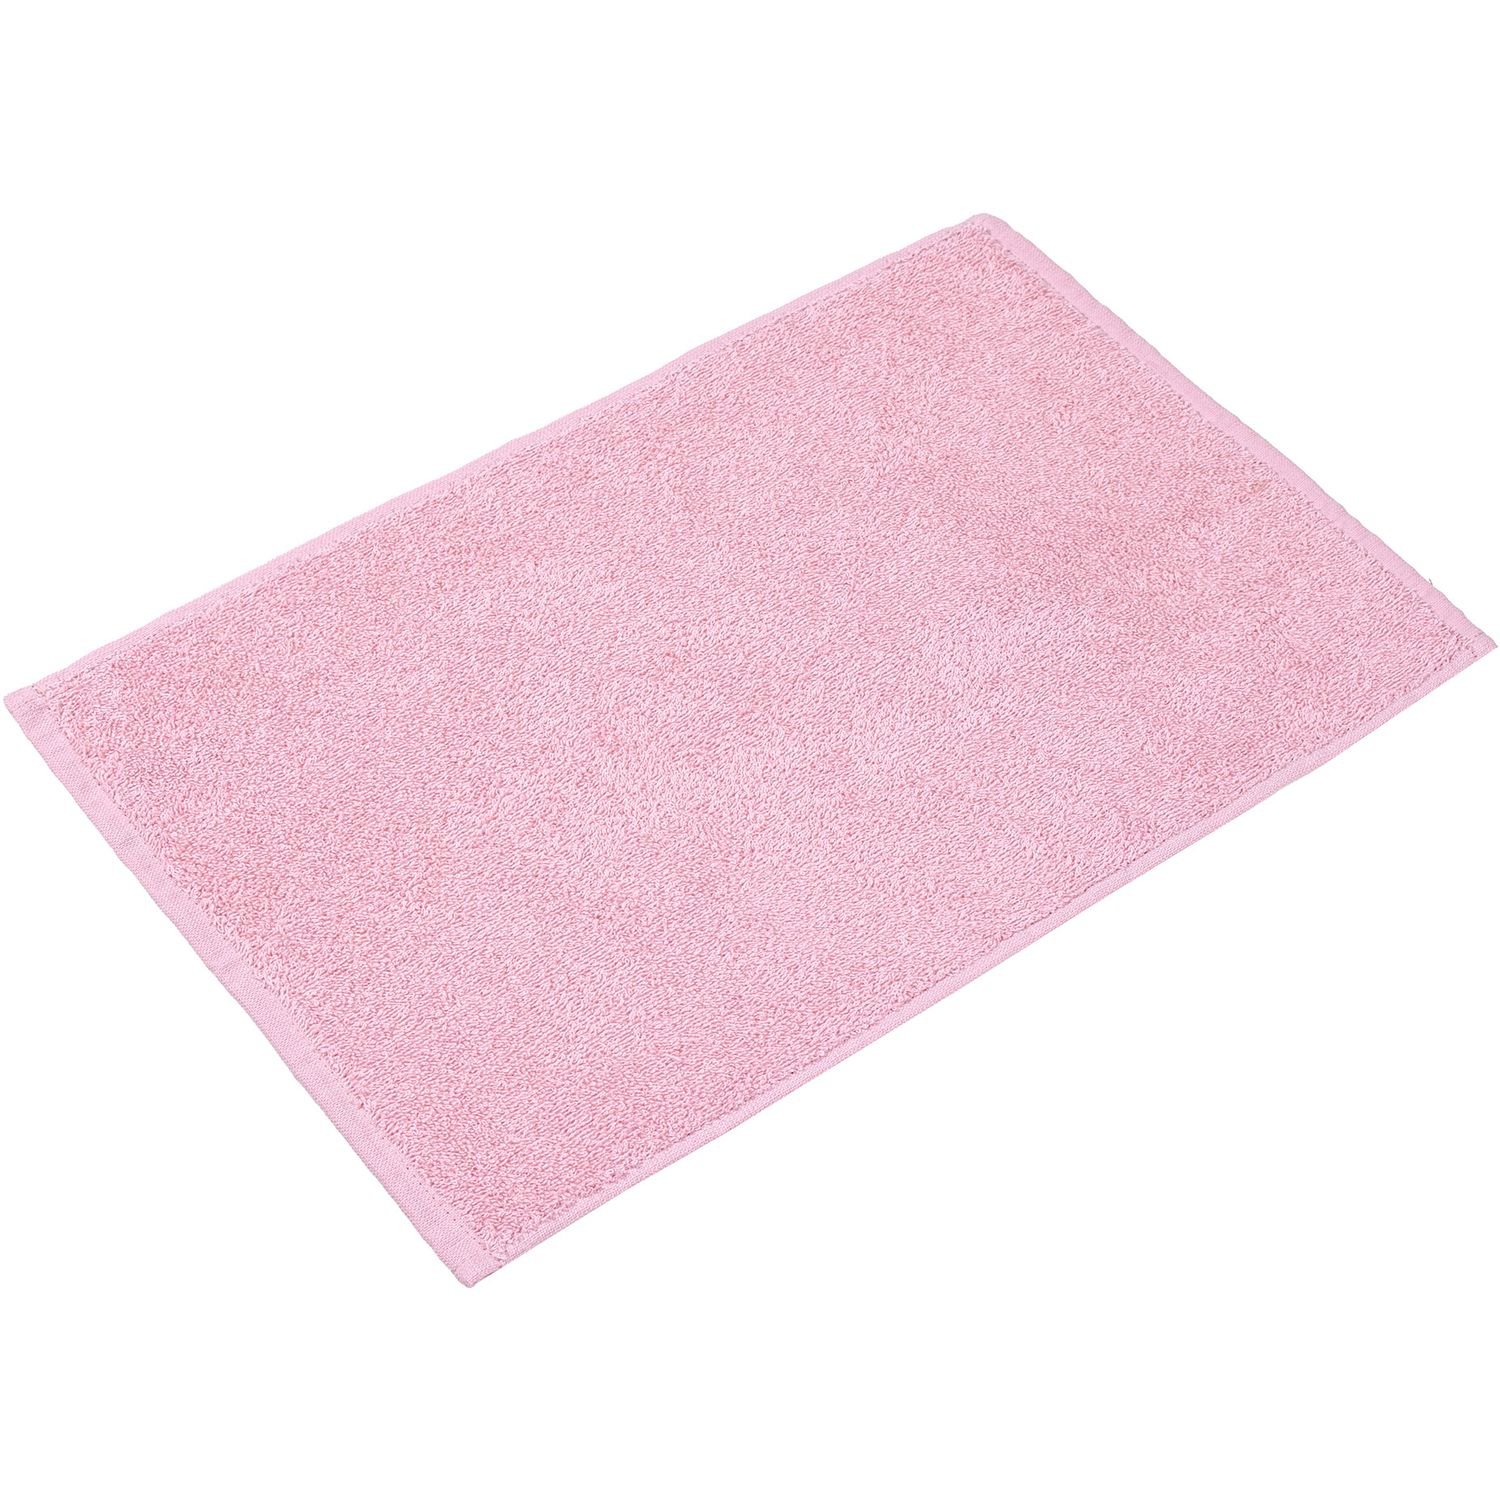 Рушник (серветка) Home Line махровий, 45х30 см, рожевий (174526) - фото 1